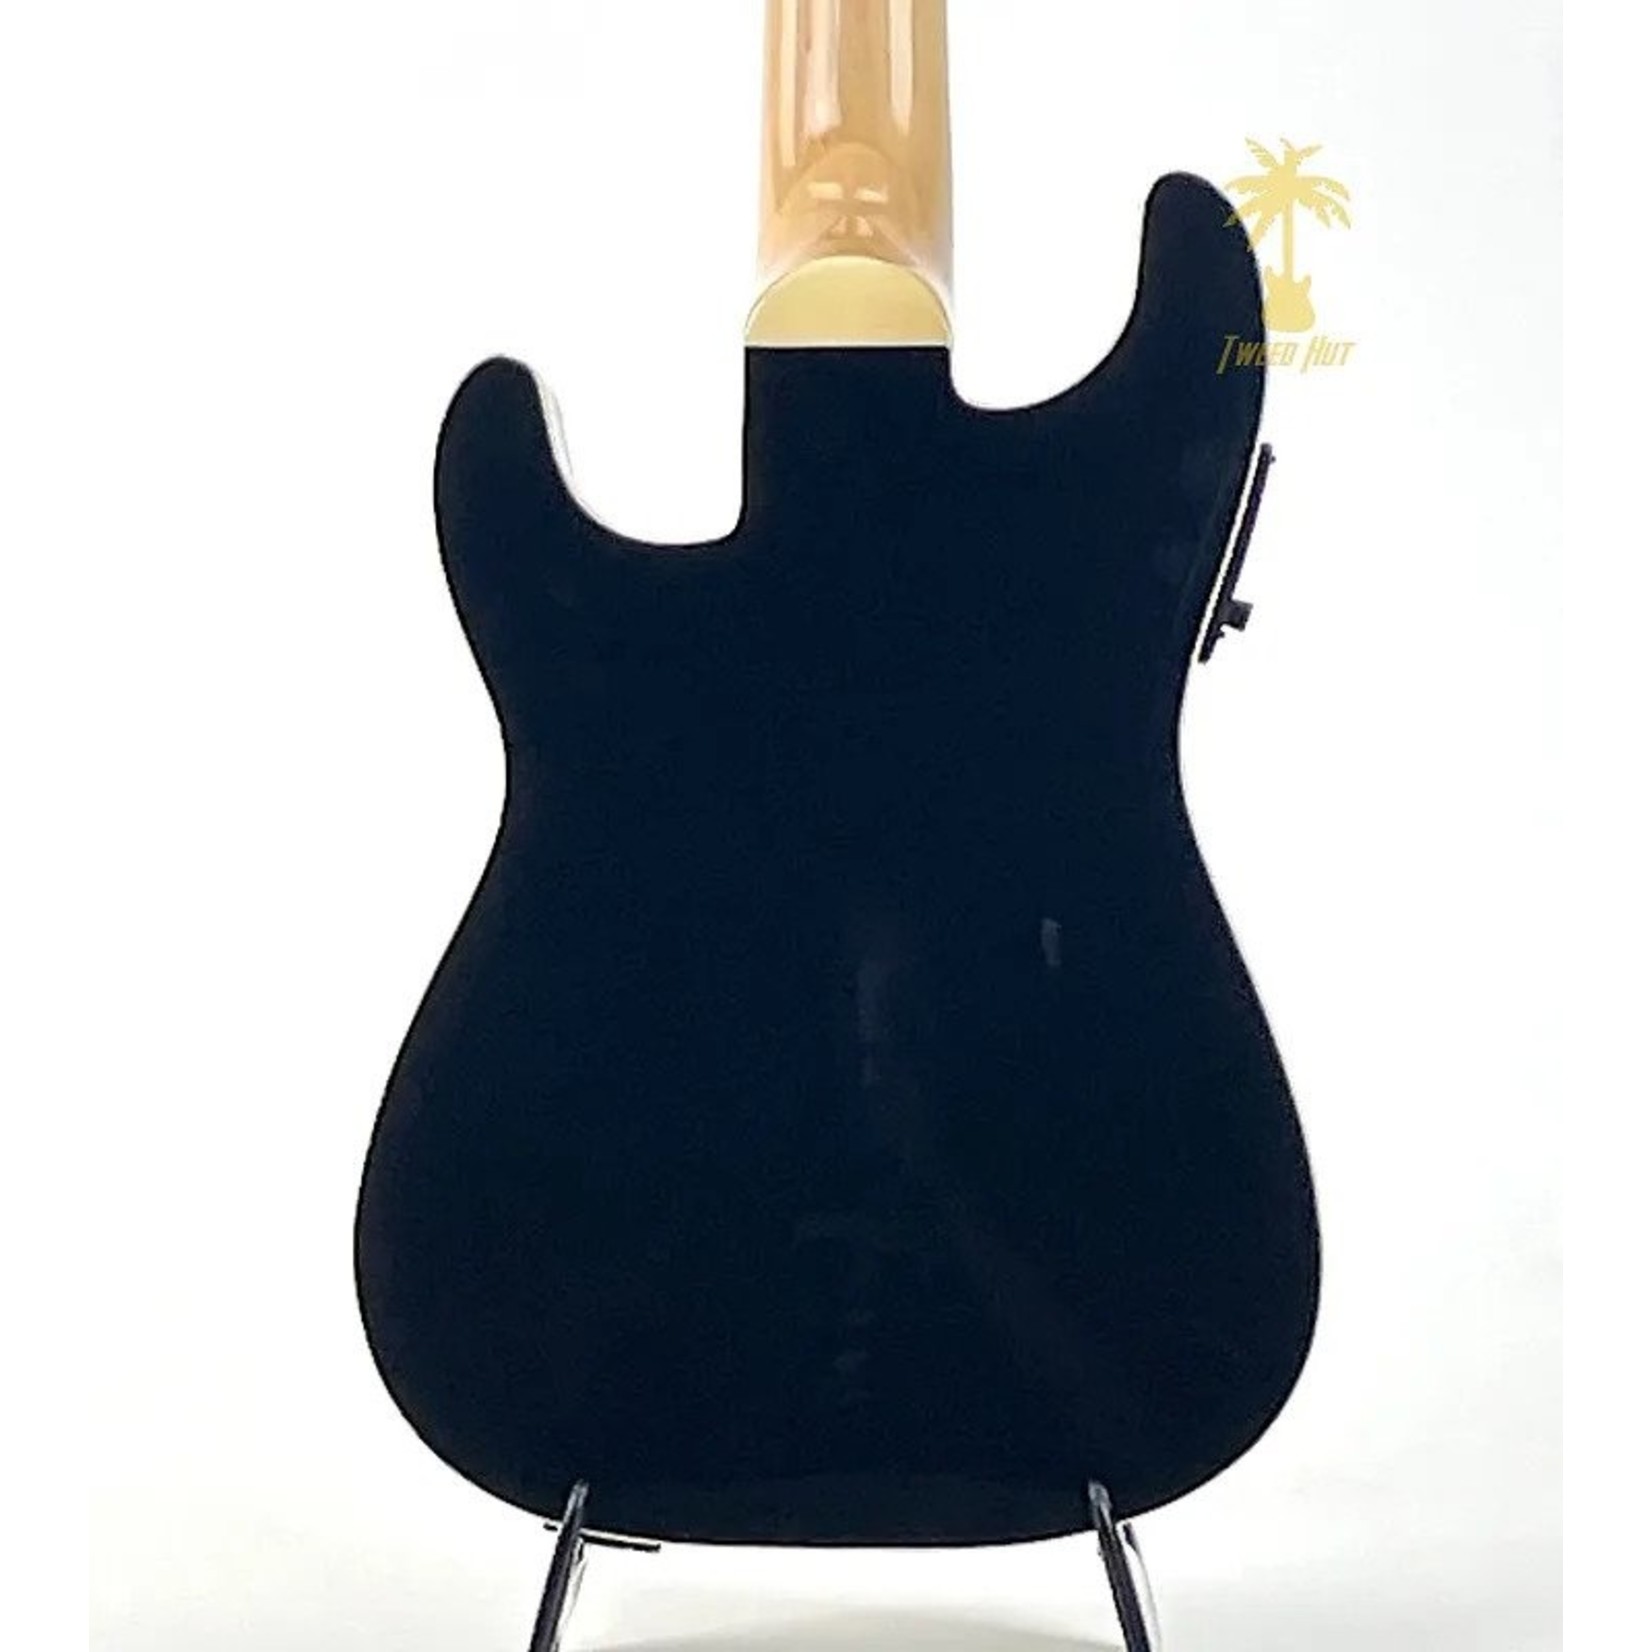 Fender Fender Fullerton Strat® Uke, Black